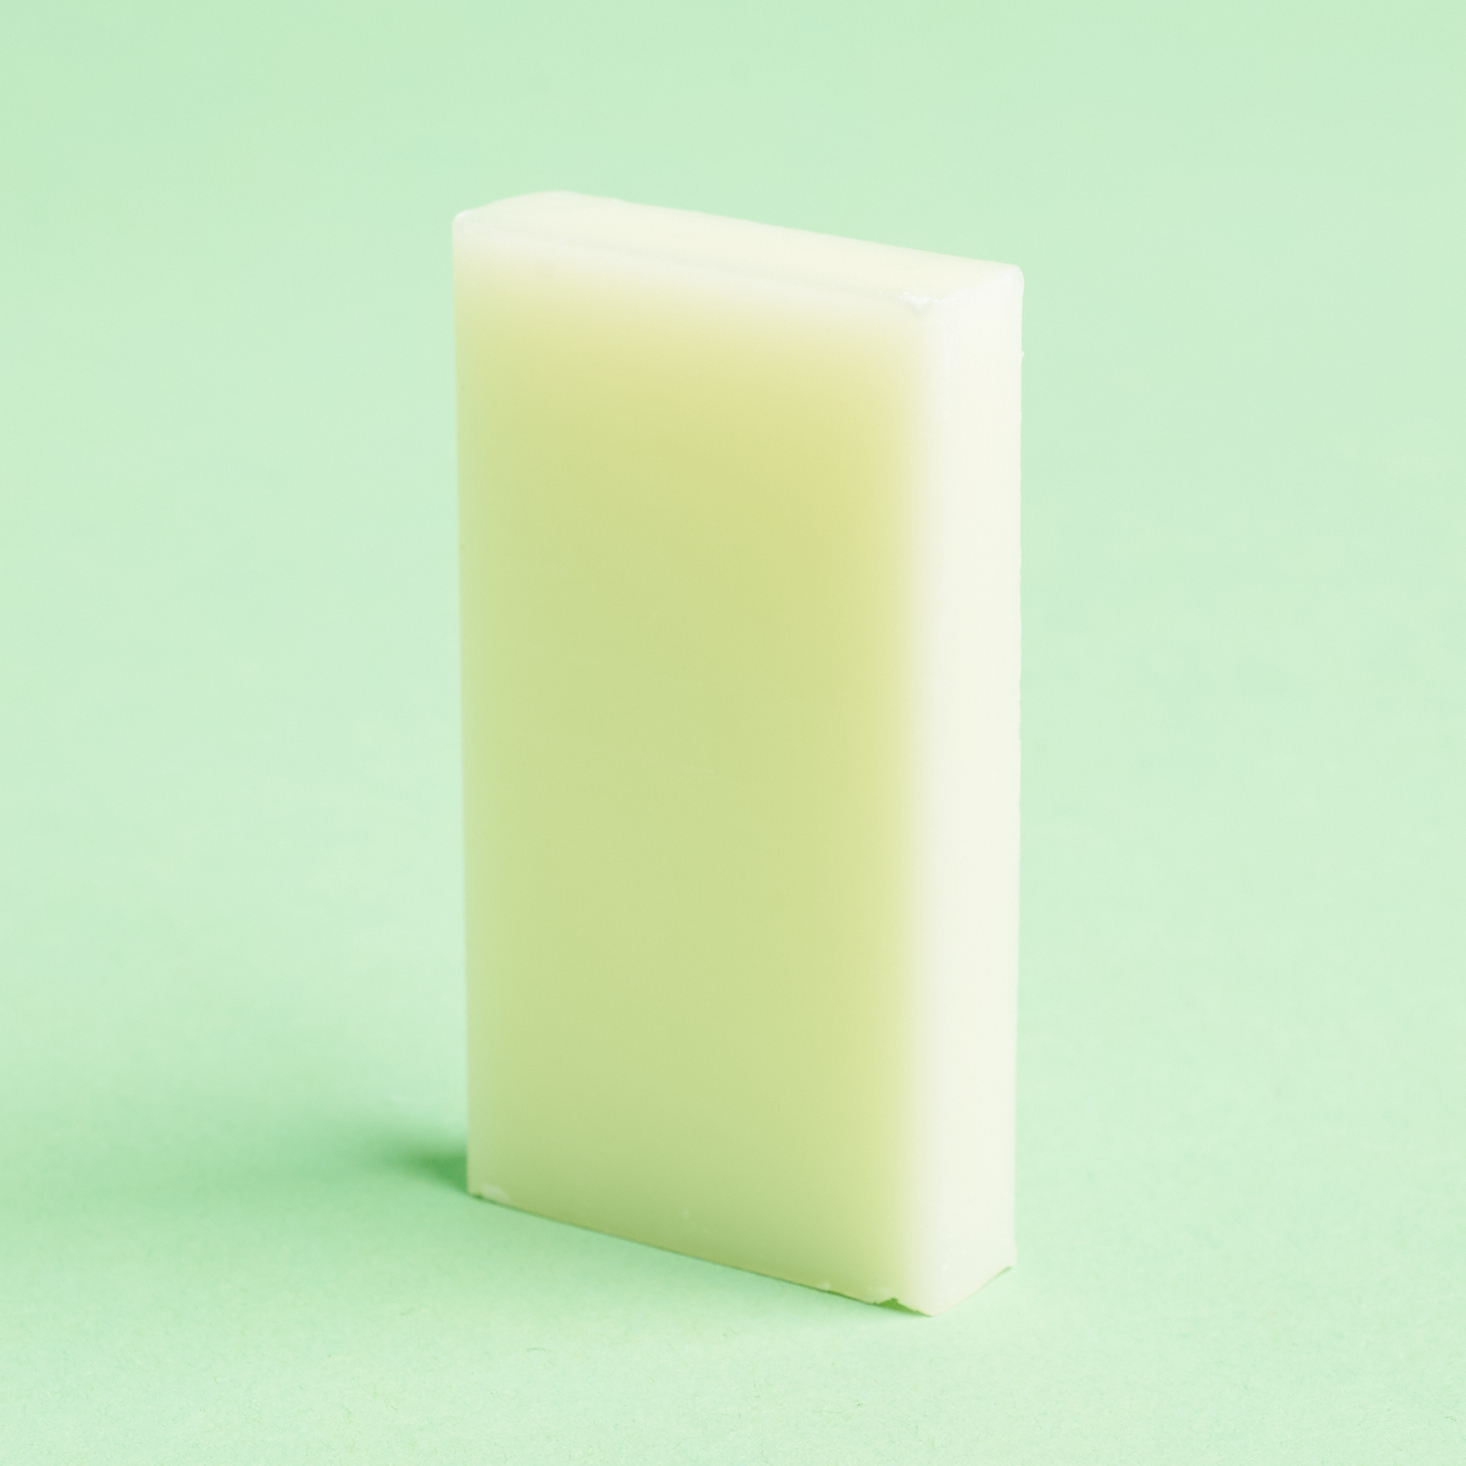 cream colored bar of soap